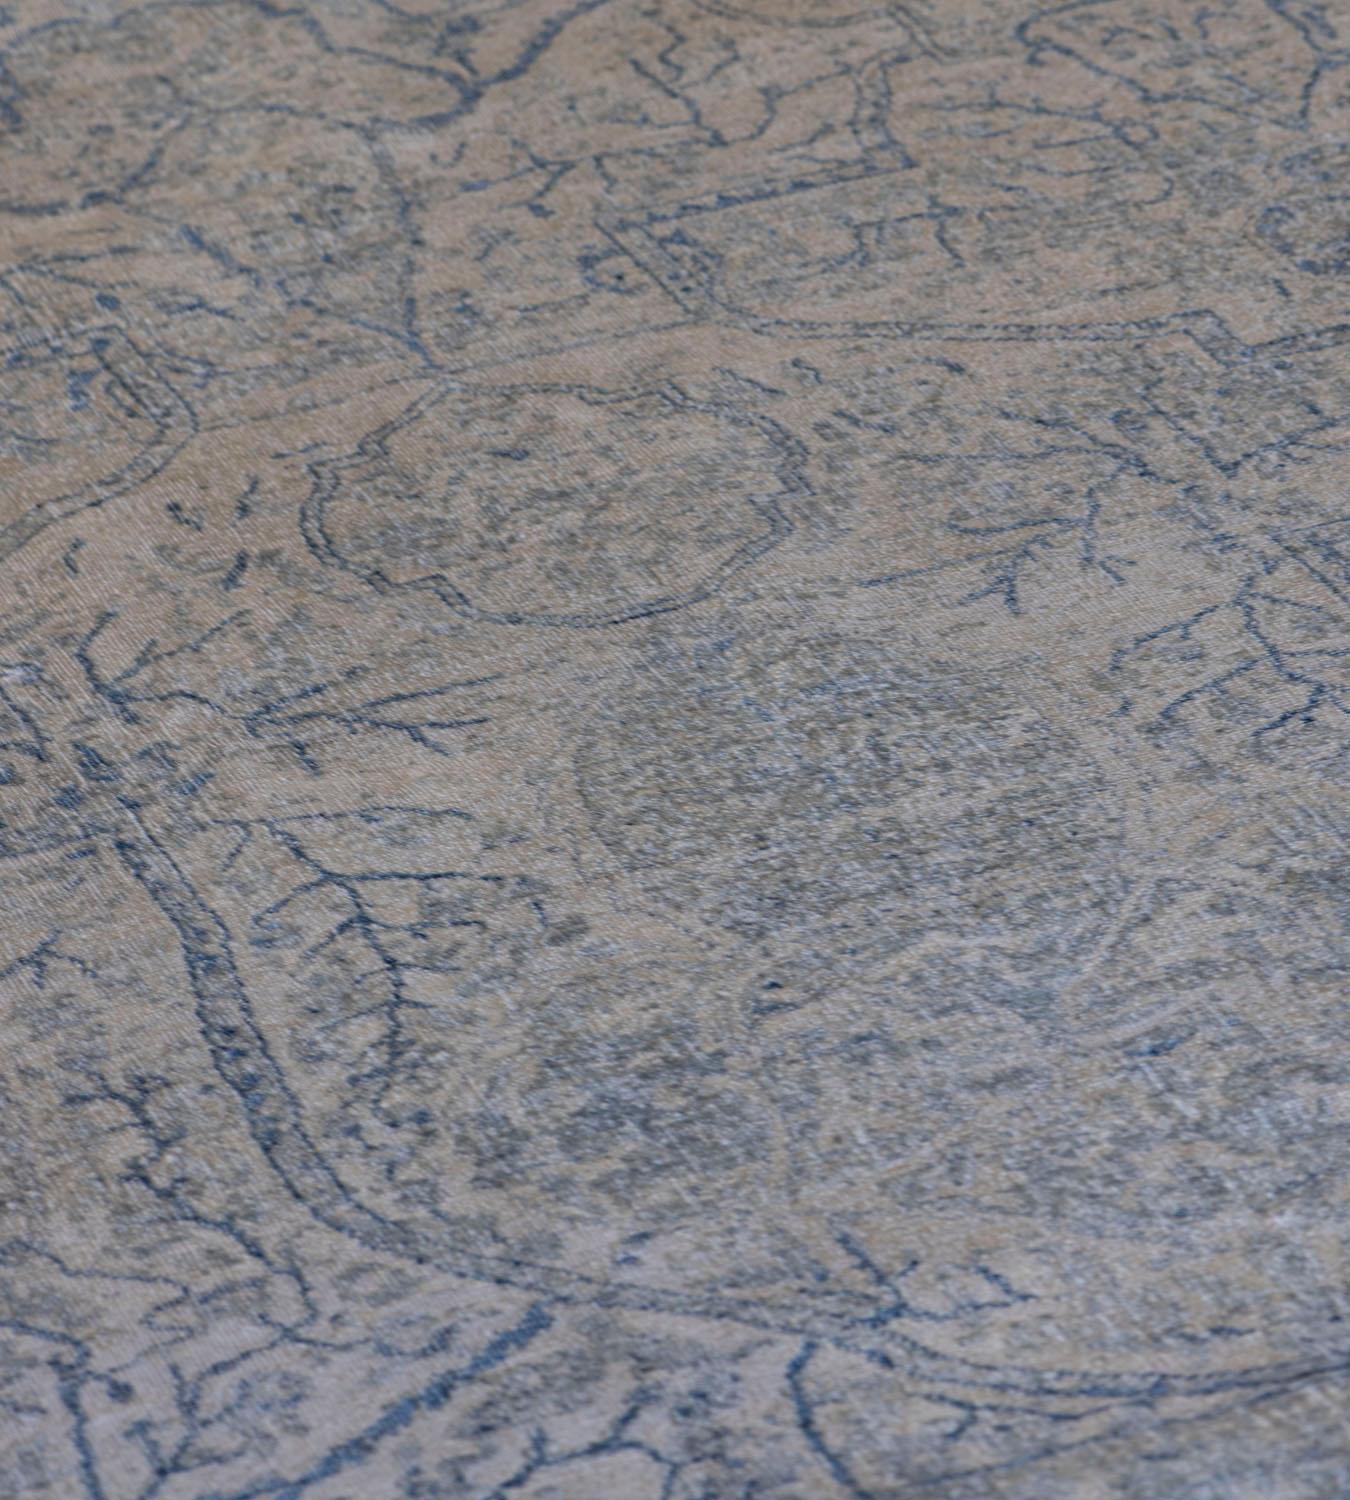 Ce tapis Kirman de renaissance présente un champ ivoire nuancé avec un motif général de palmettes délicates et de vignes florales bleu marine nuancé, dans une bordure bleu marine de vignes à têtes de fleurs denses entre deux bandes de vignes